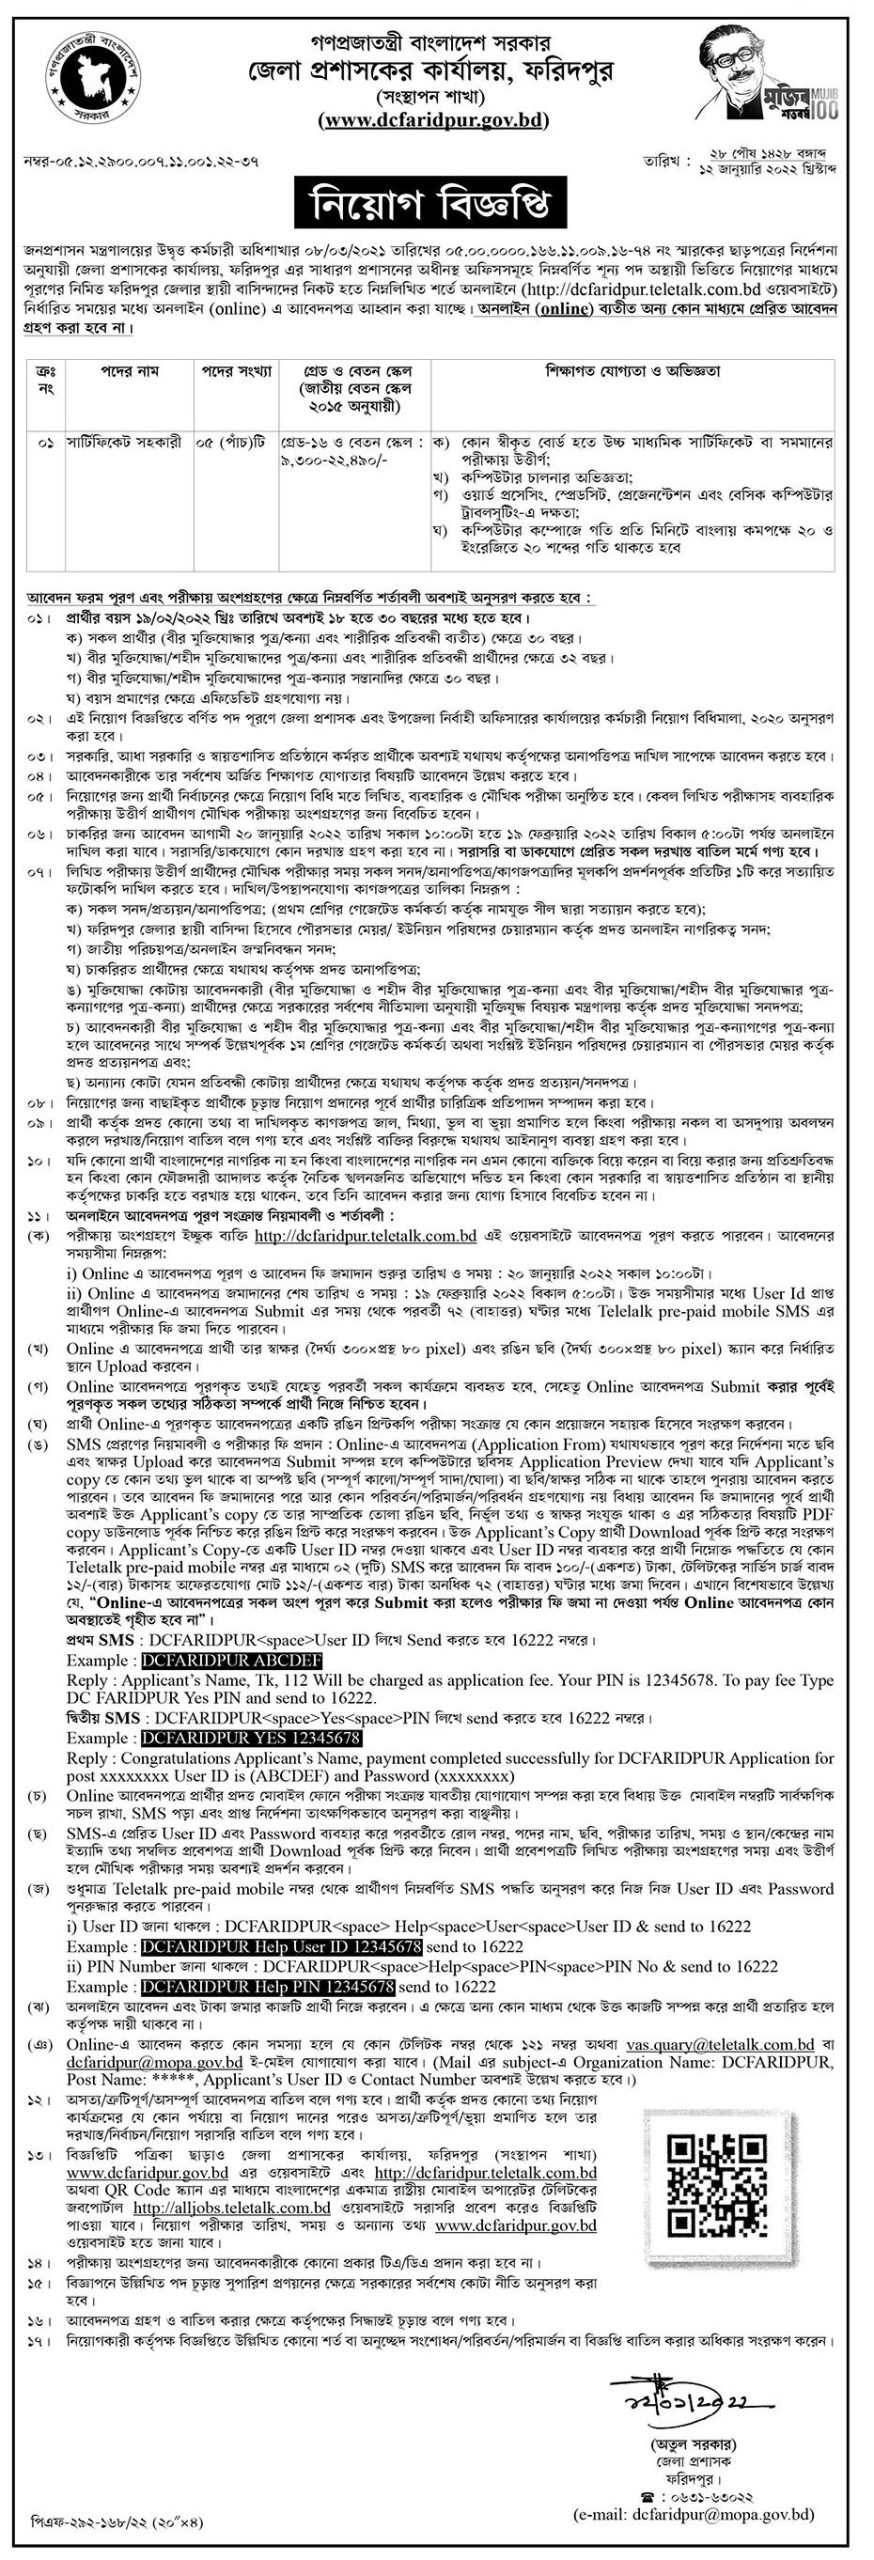 Faridpur DC Office Job Circular 2022-www.faridpur.gov.bd